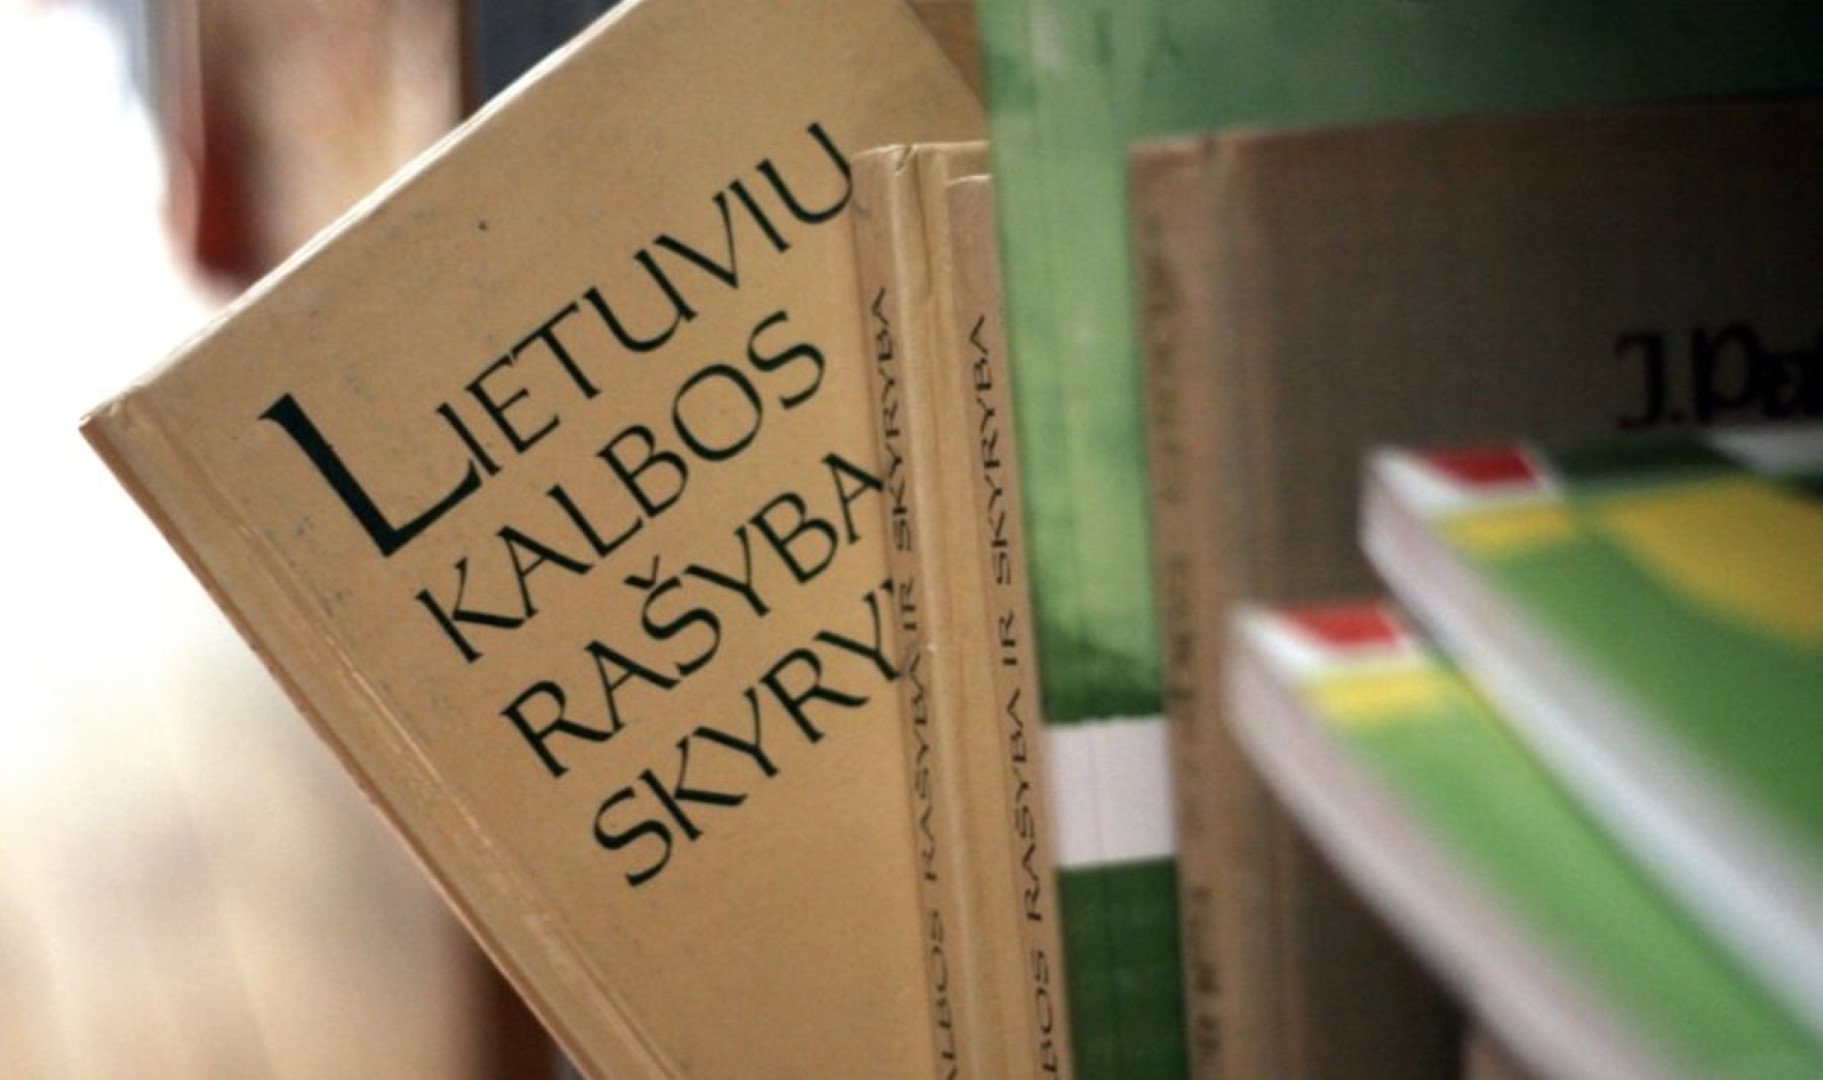 Valstybinei lietuvių kalbos komisijai prakalbus apie kitais metais prasidėsiantį ukrainiečių pabėgėlių lietuvių kalbos žinių tikrinimą, kilo nemenkas ažiotažas.